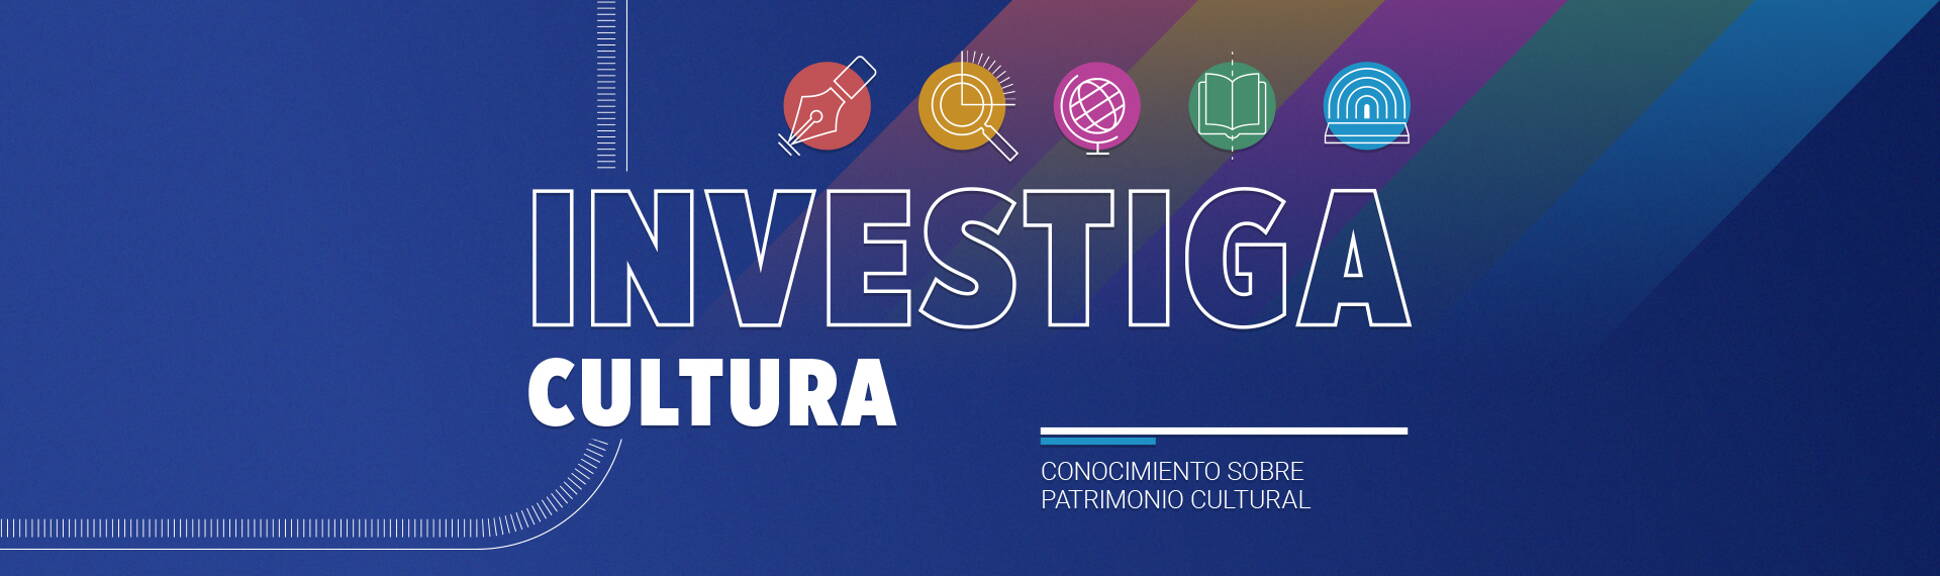 El Gobierno presentó el programa Investiga Cultura